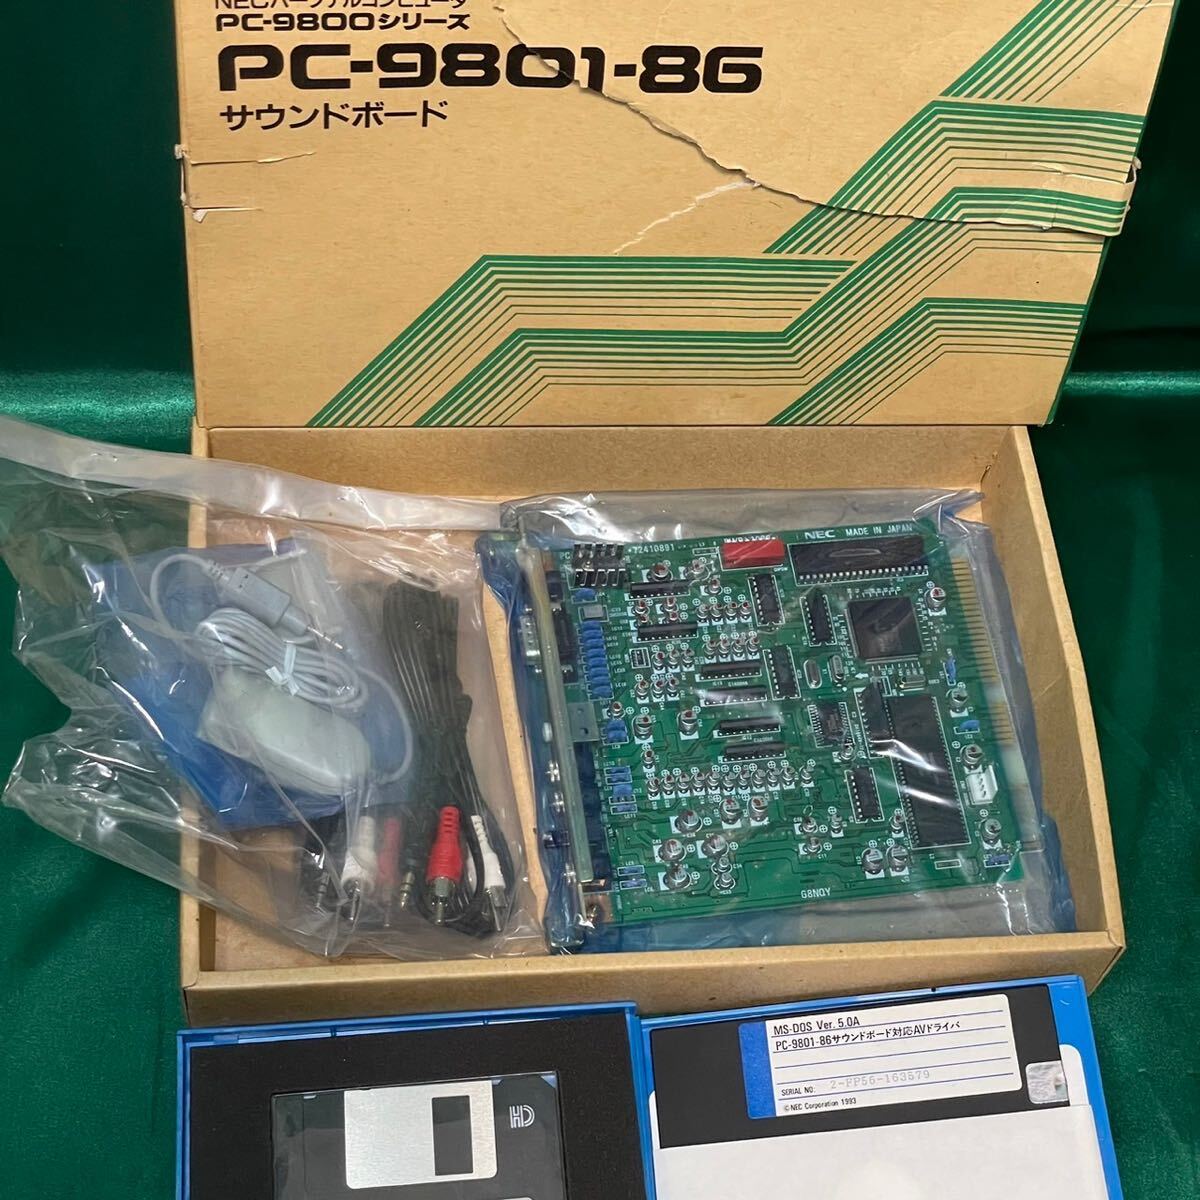 希少品 奇跡の未使用 NEC PC PC-9800シリーズ PC-9801-86 サウンドボード 対応AVドライバ MS-DDS Ver.5.0A パソコン関連 ネオクラシックの画像3